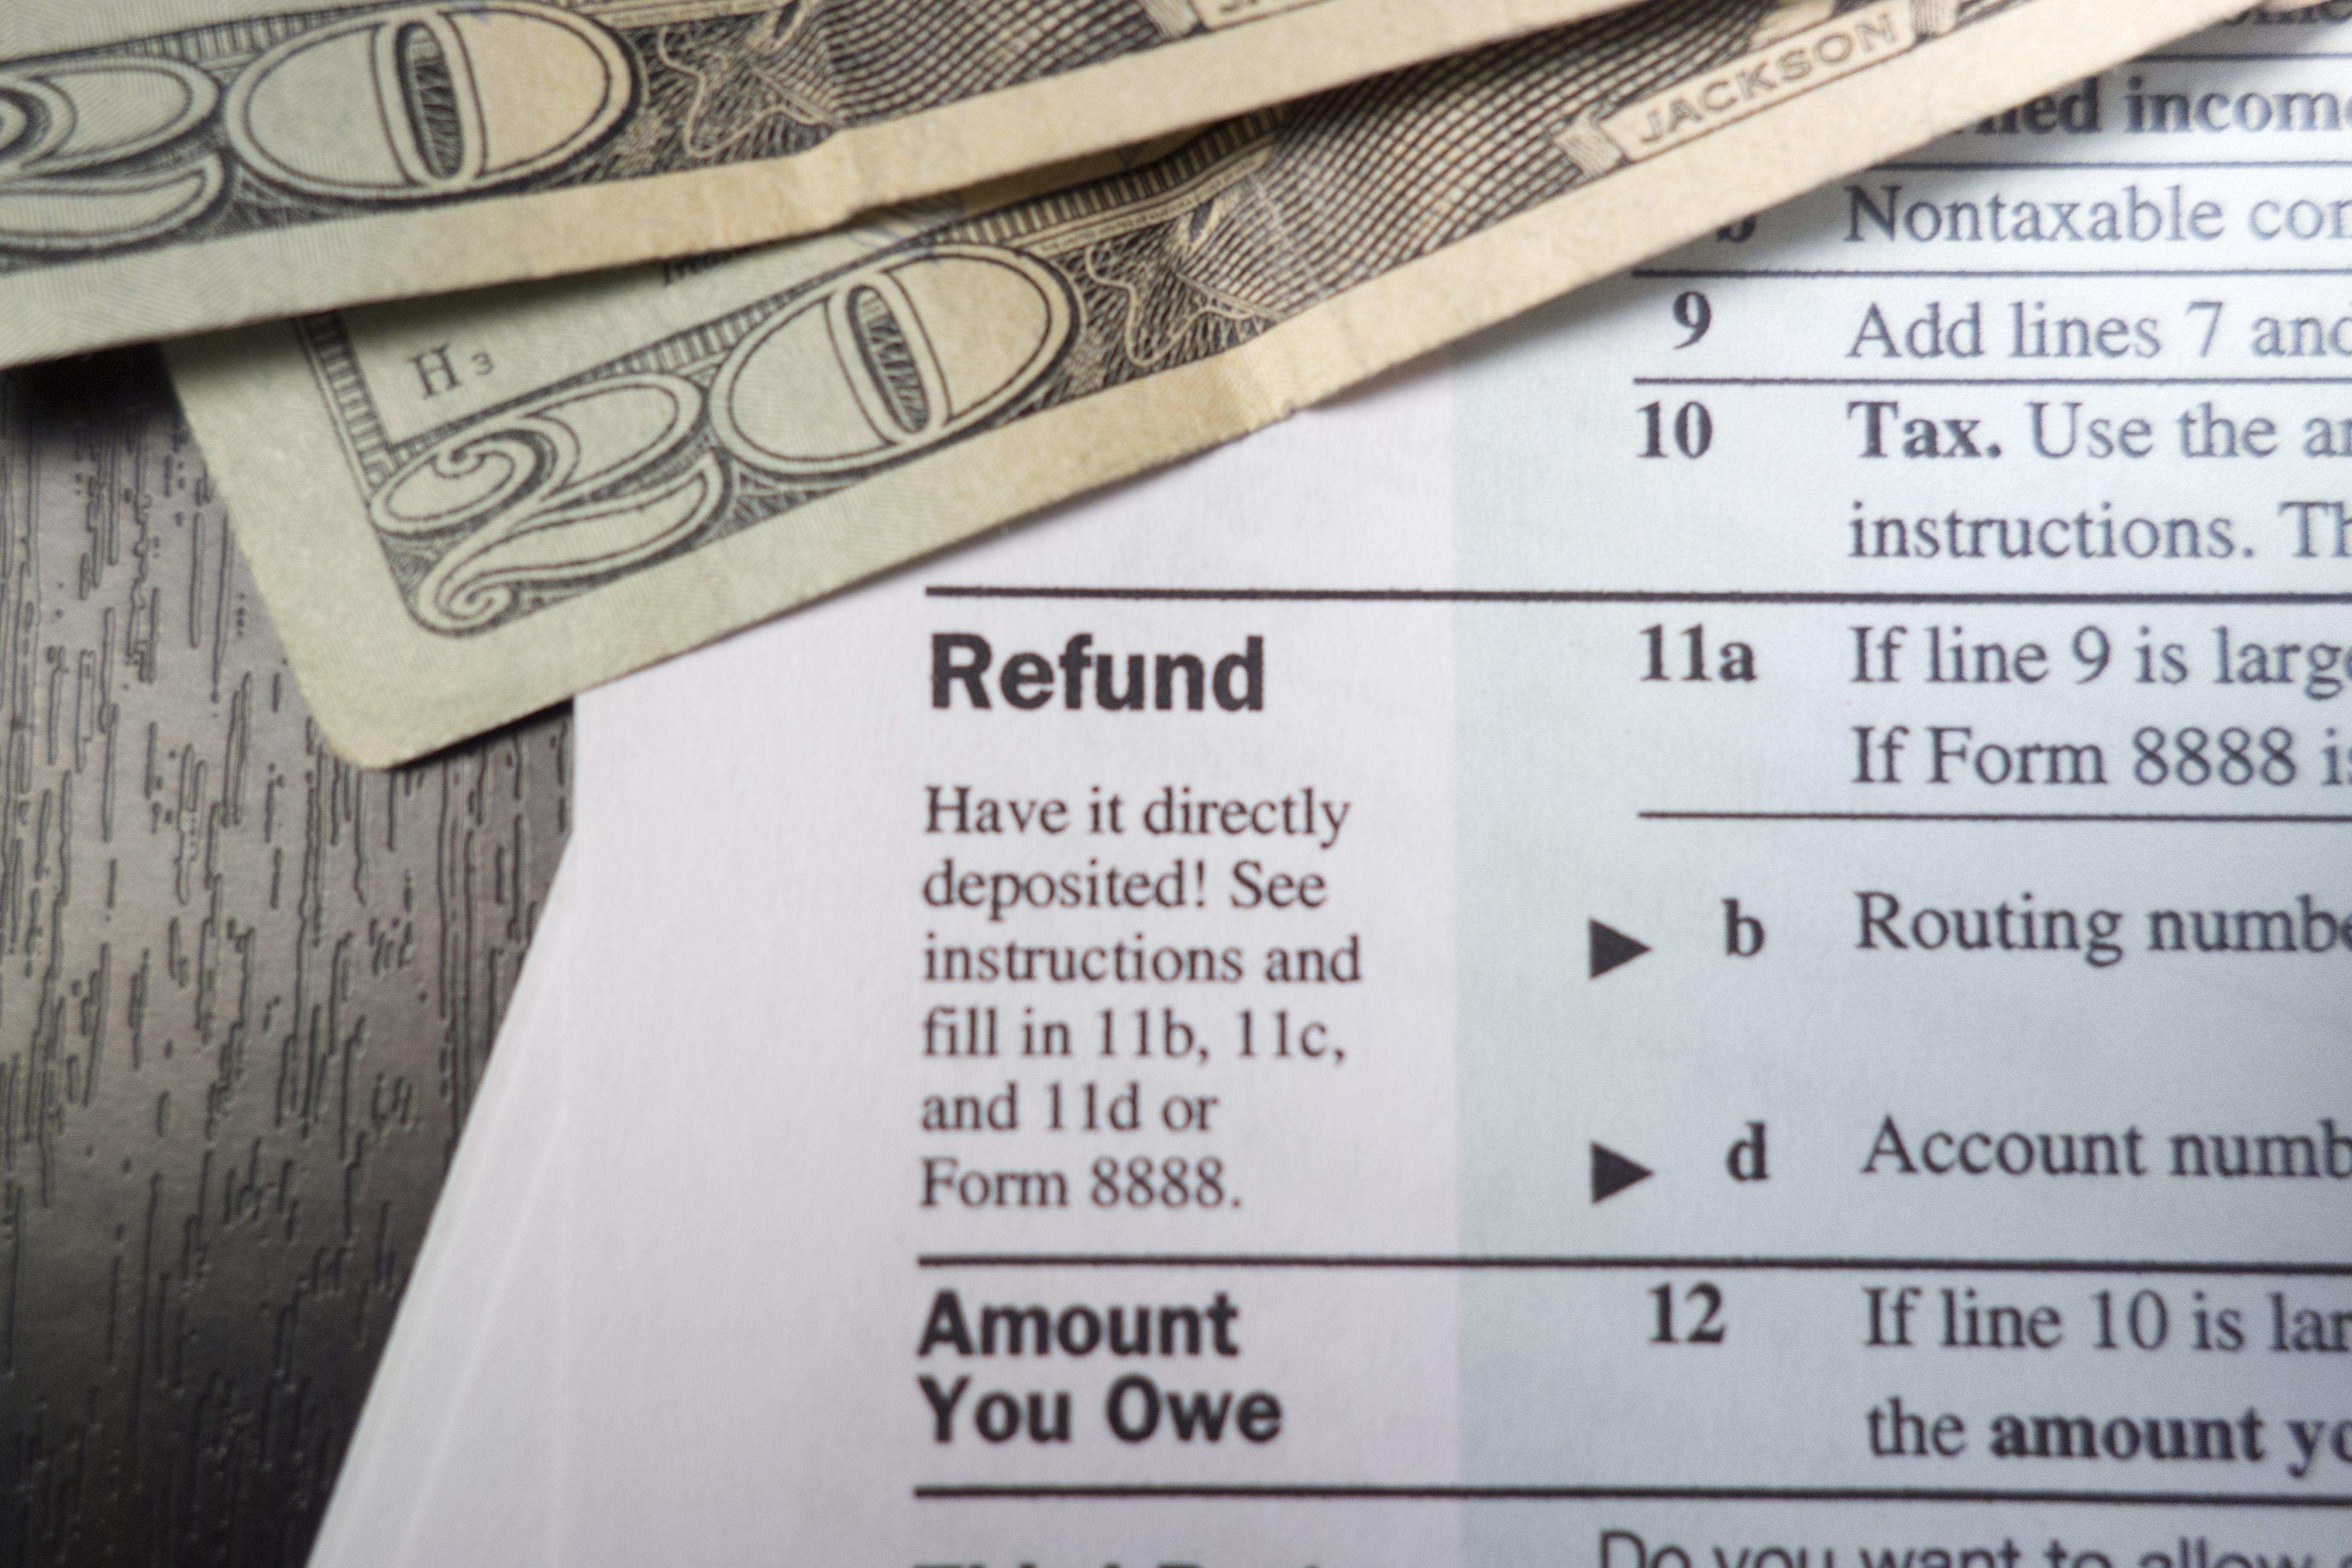 IRS Refund Tracker: 